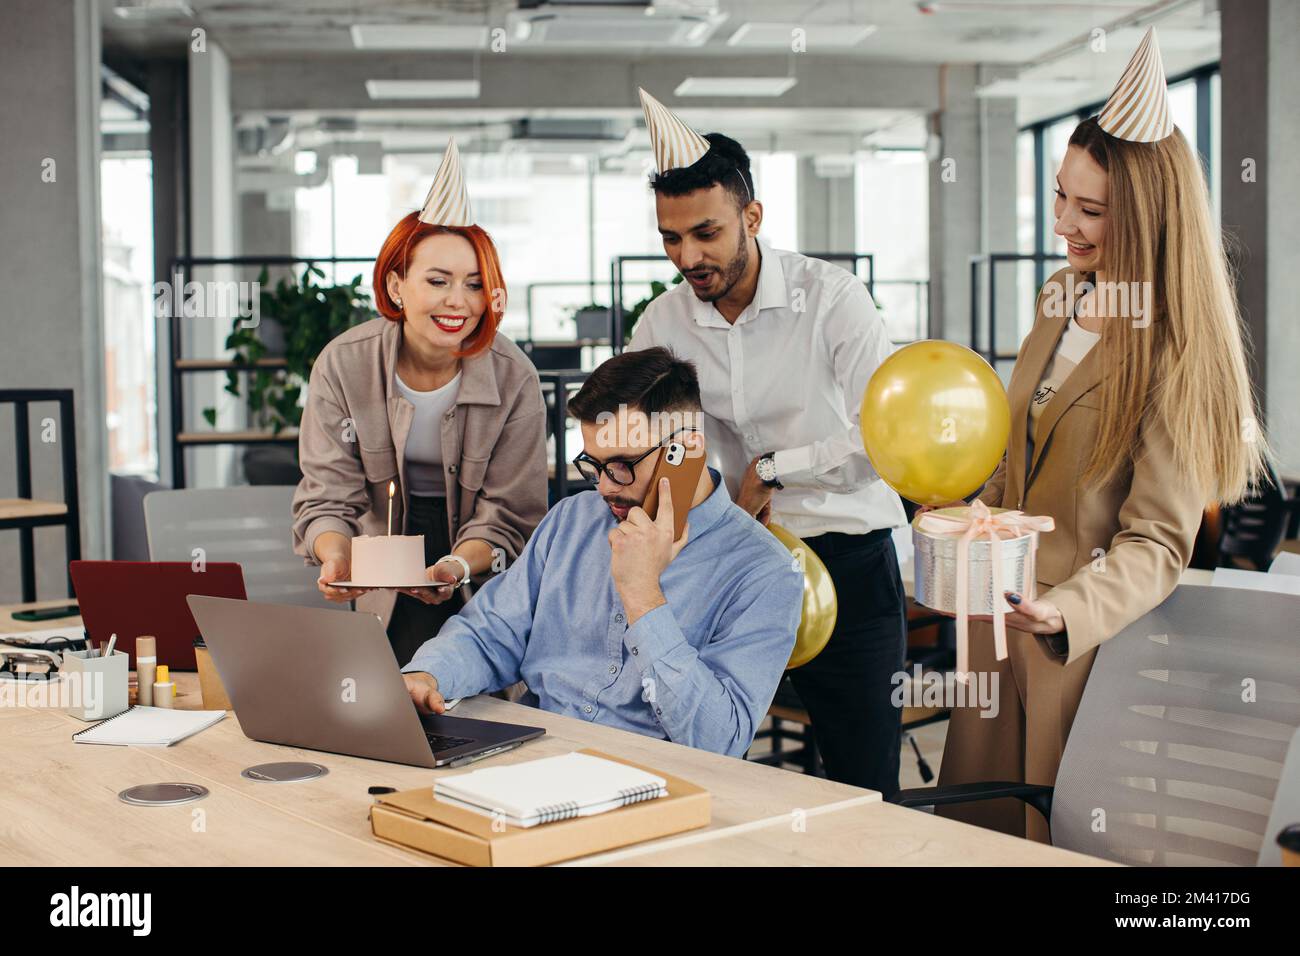 Überraschung. Gemischte Rassen glückliche Menschen feiern den Geburtstag eines Kollegen in einem modernen Büro Stockfoto